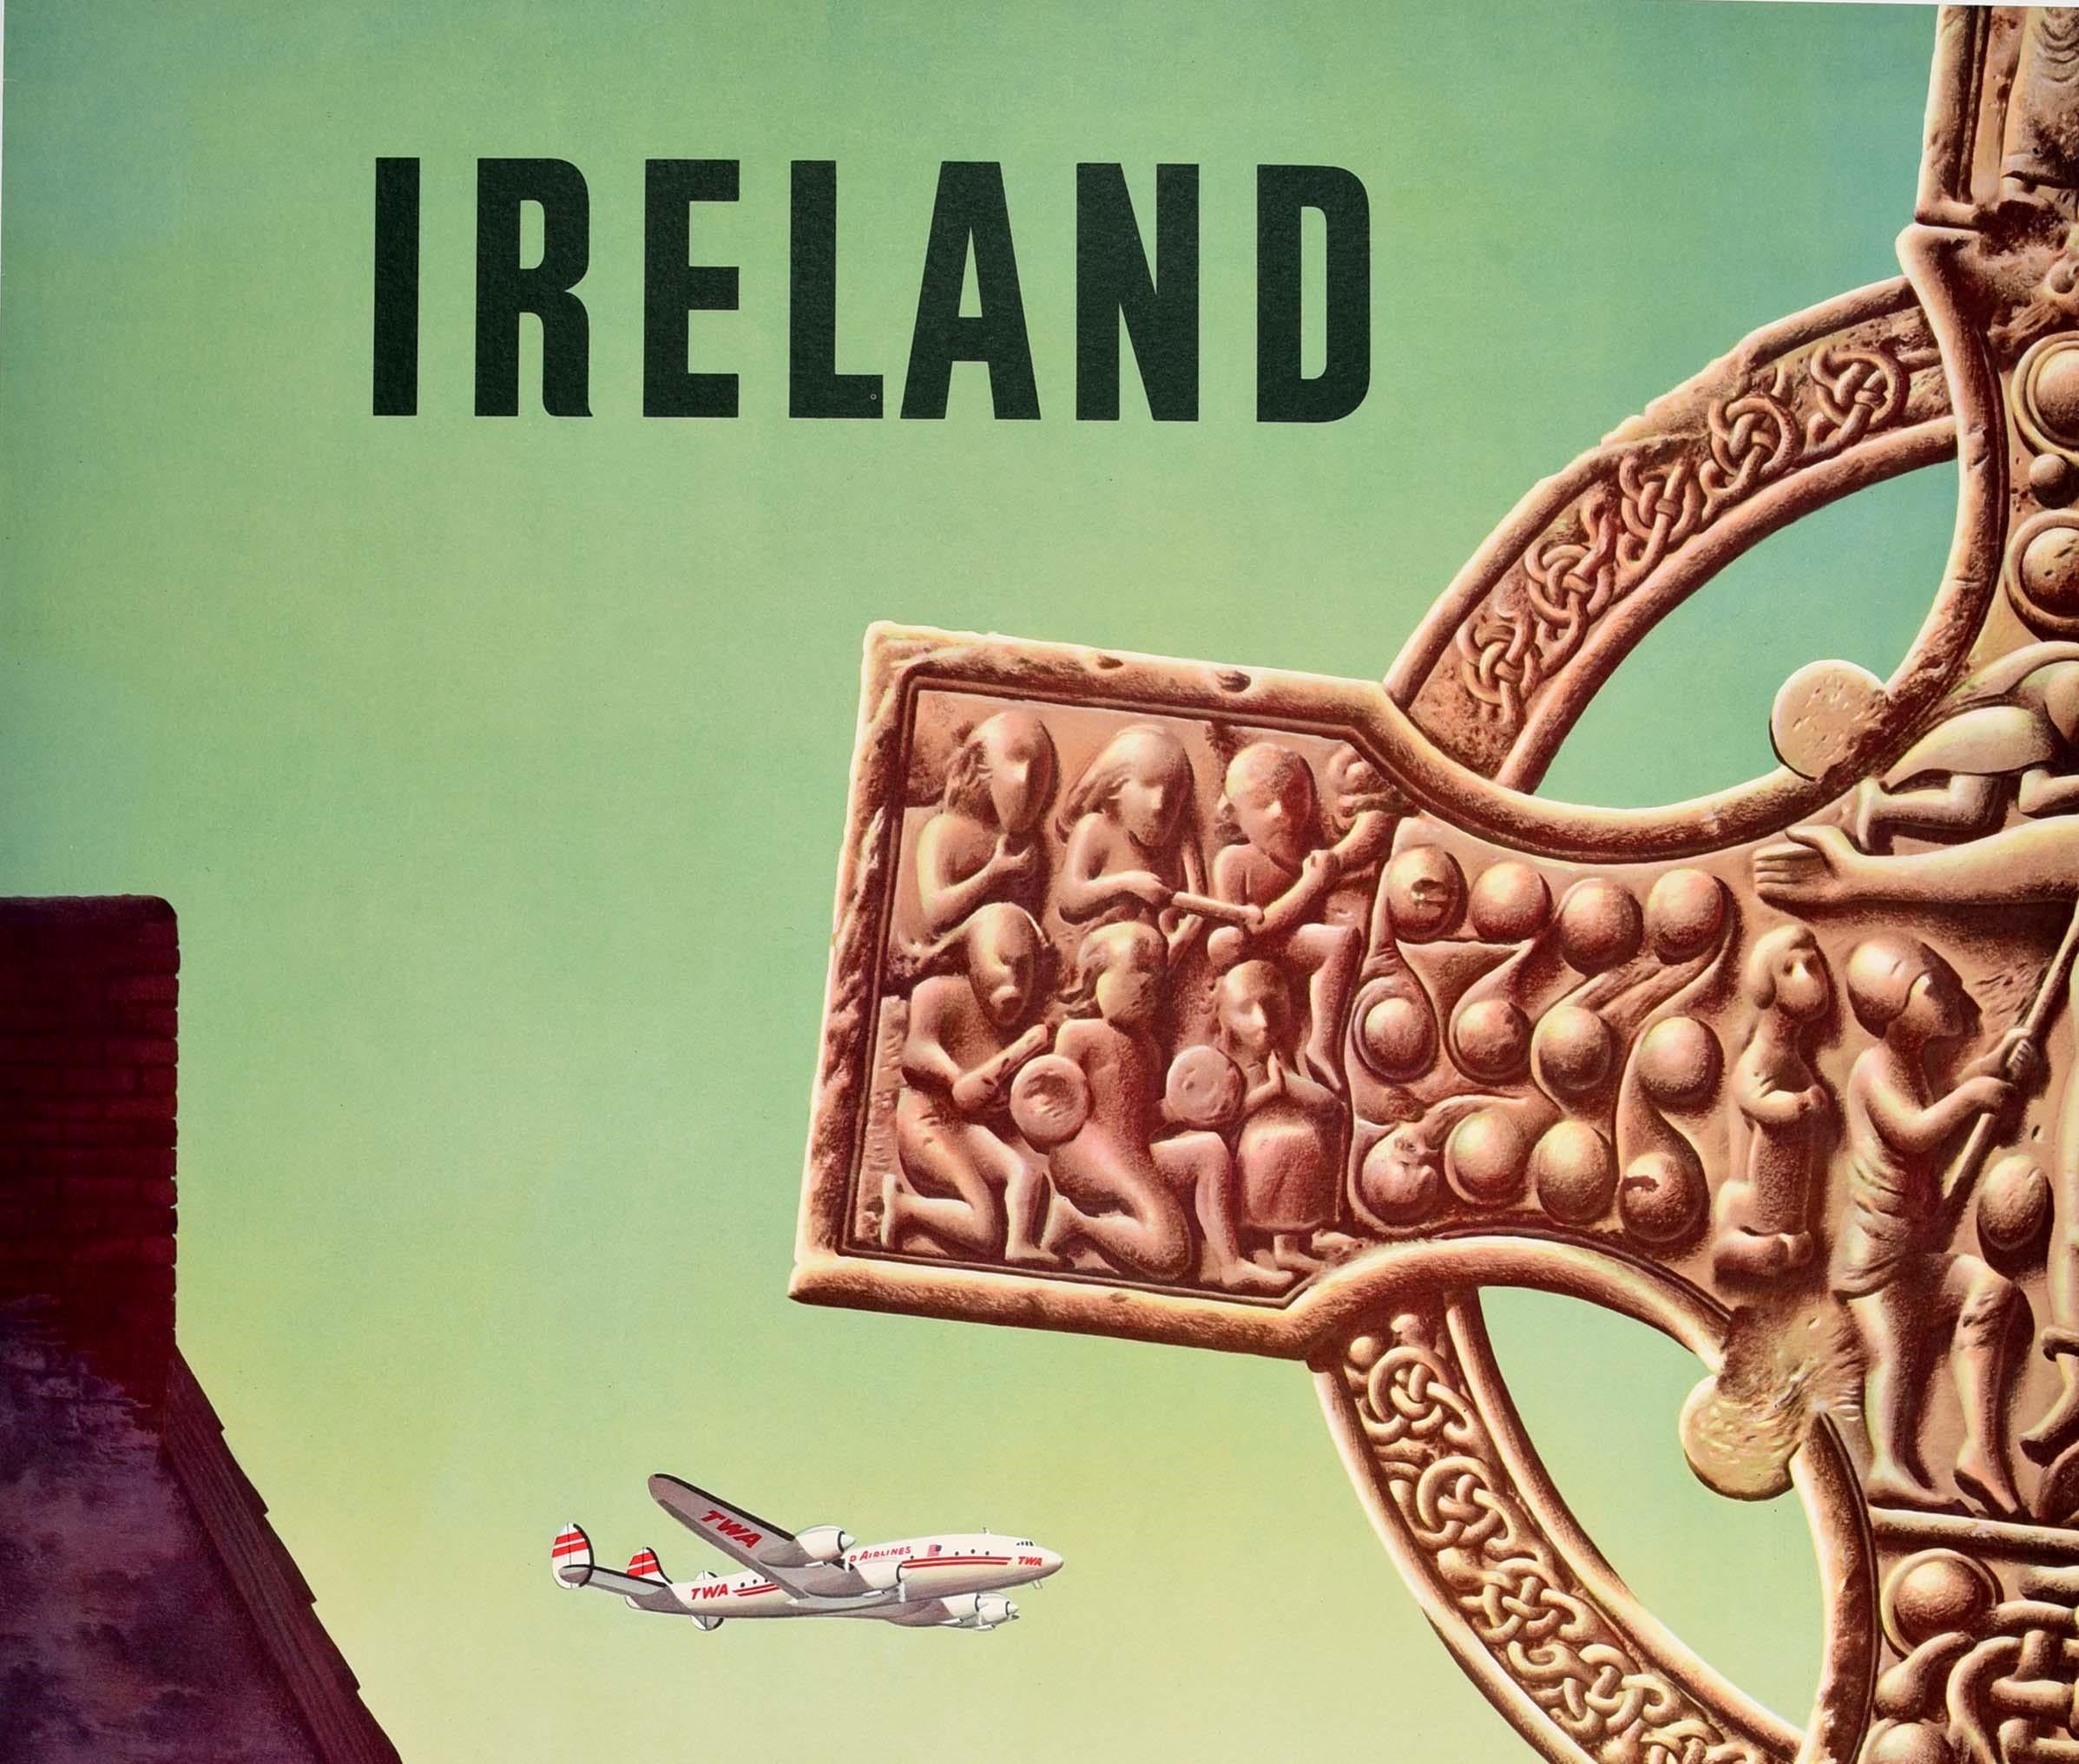 Affiche de voyage vintage originale pour l'Irlande Fly TWA Trans World Airlines présentant un superbe dessin représentant un avion Lockheed Constellation survolant la campagne irlandaise avec une dame souriante saluant un homme à cheval devant un